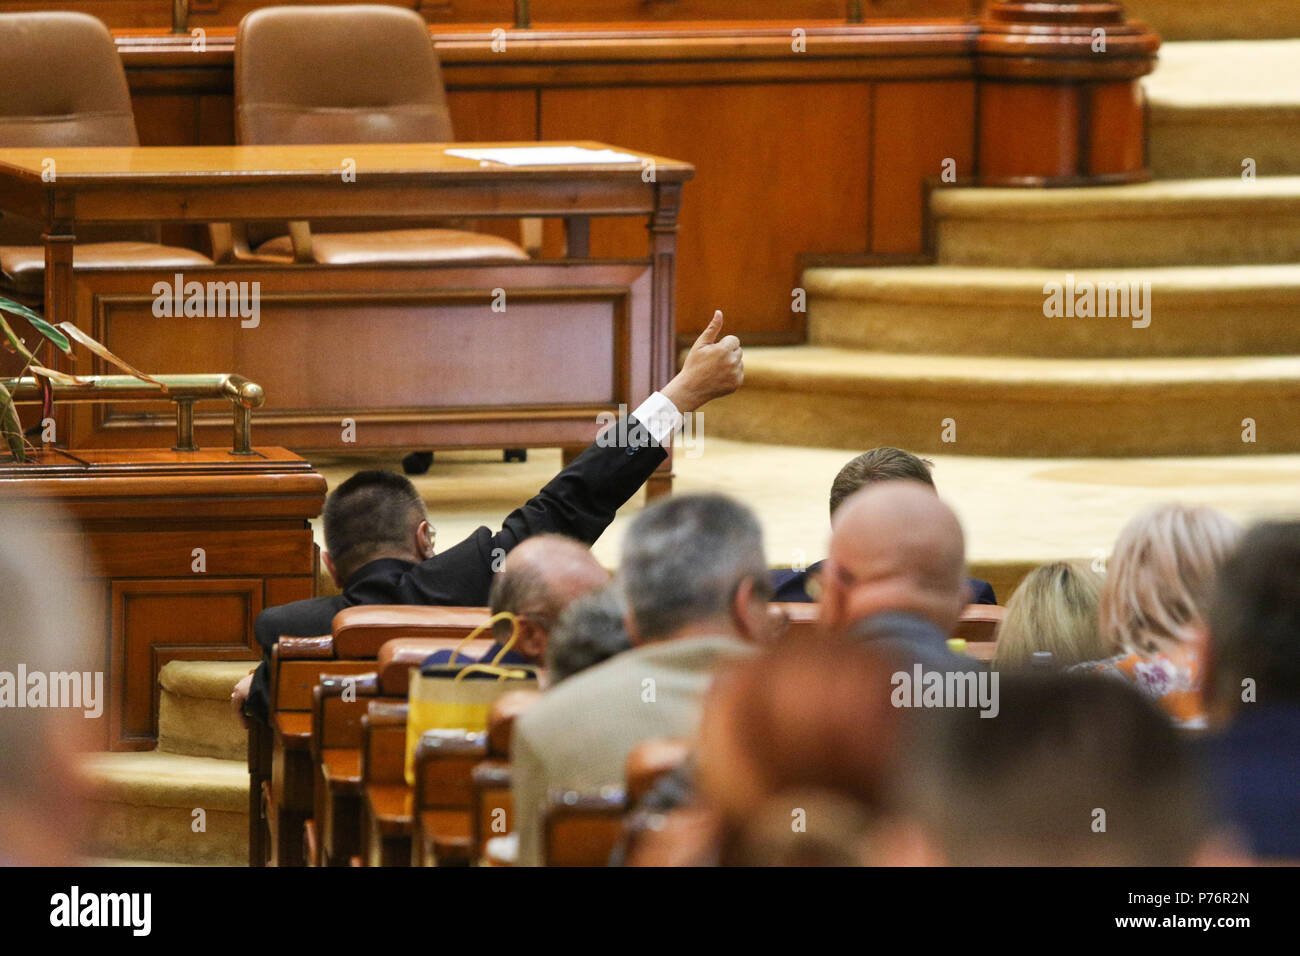 Bukarest, Rumänien - 4. Juli 2018: Die Lider einer parlamentarischen Gruppe signalisiert seinen Coleagues wie während einer Debatte zur Änderung eines Gesetzes zu stimmen Stockfoto